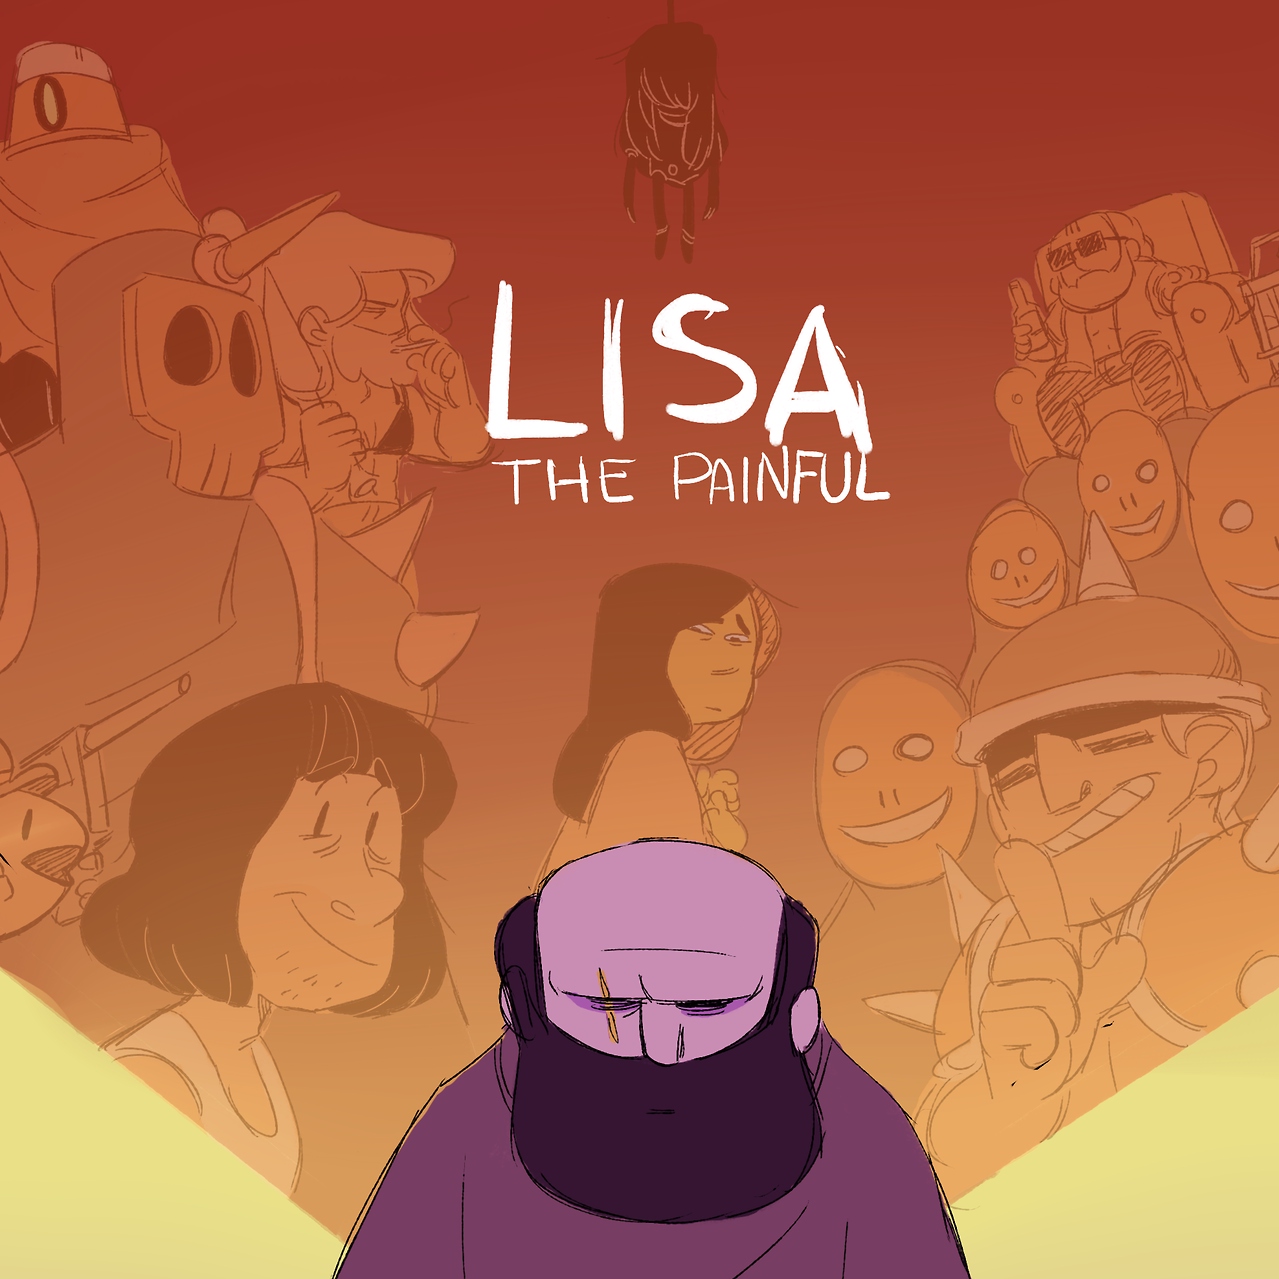 Lisa the joyful download